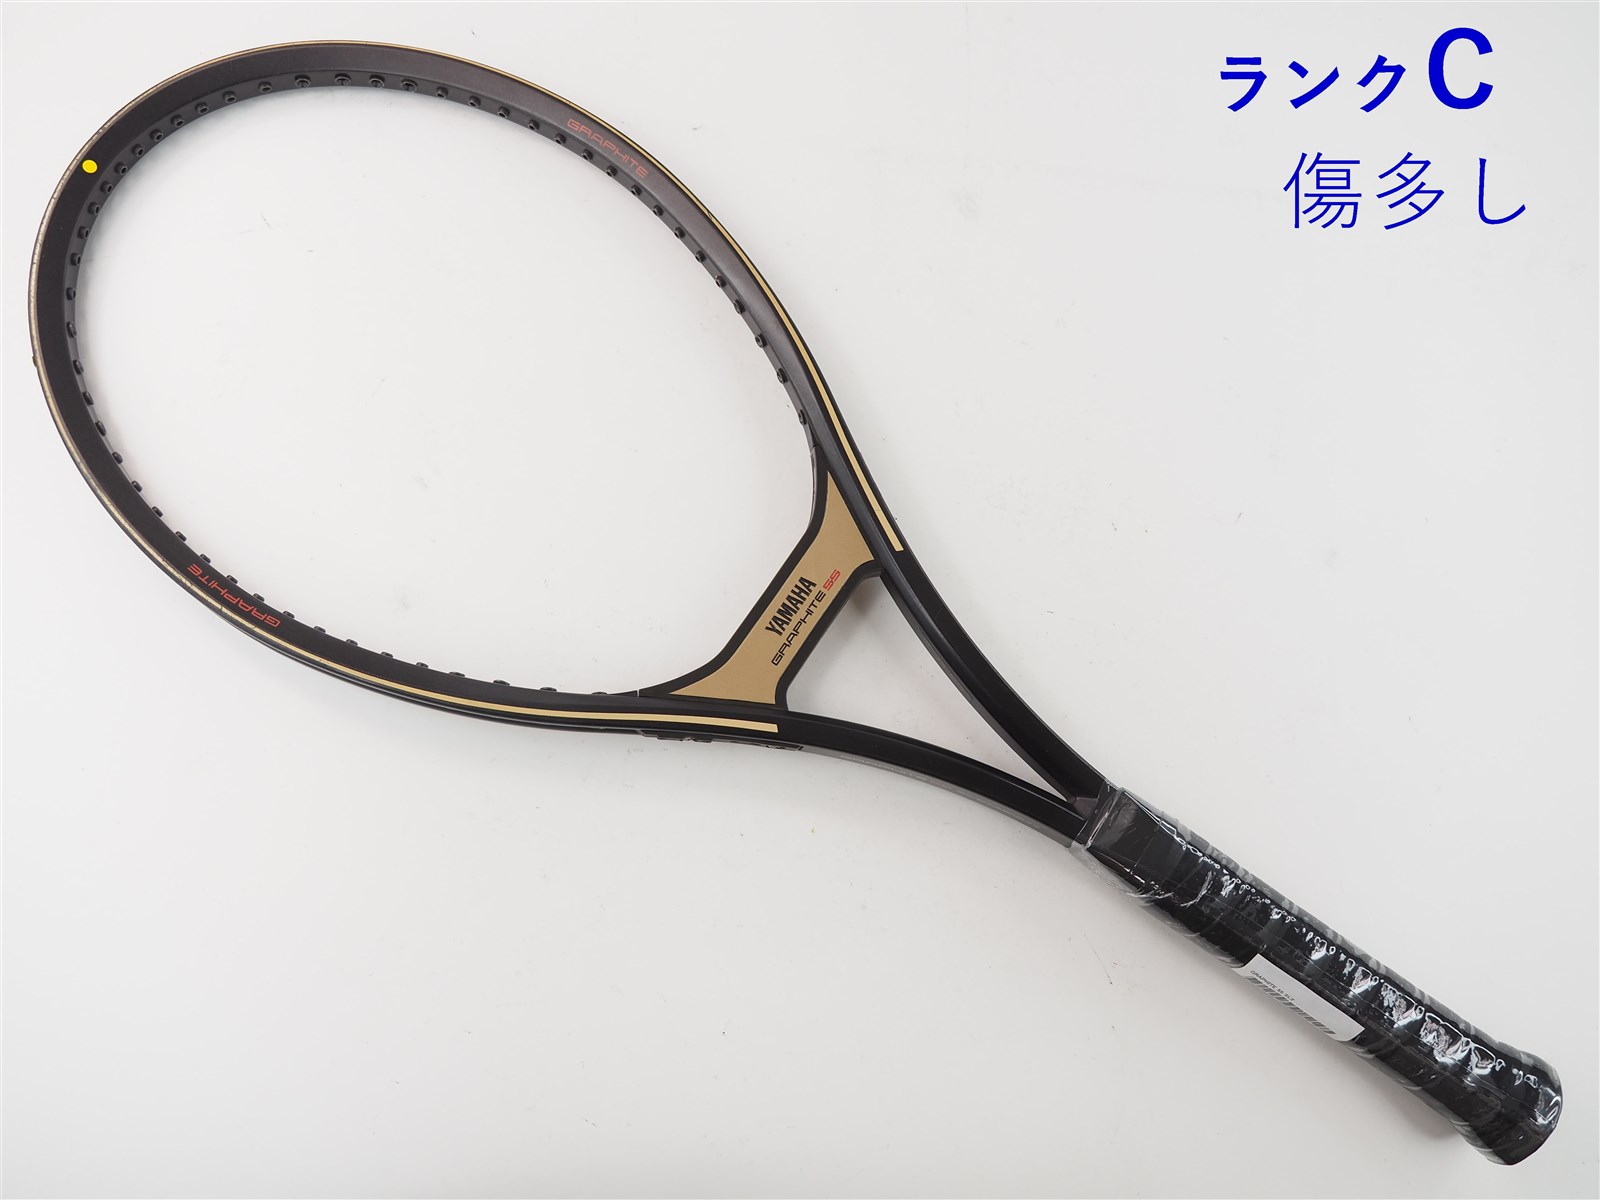 中古】ヤマハ グラファイト 55YAMAHA GRAPHITE 55(SL2)【中古 テニス